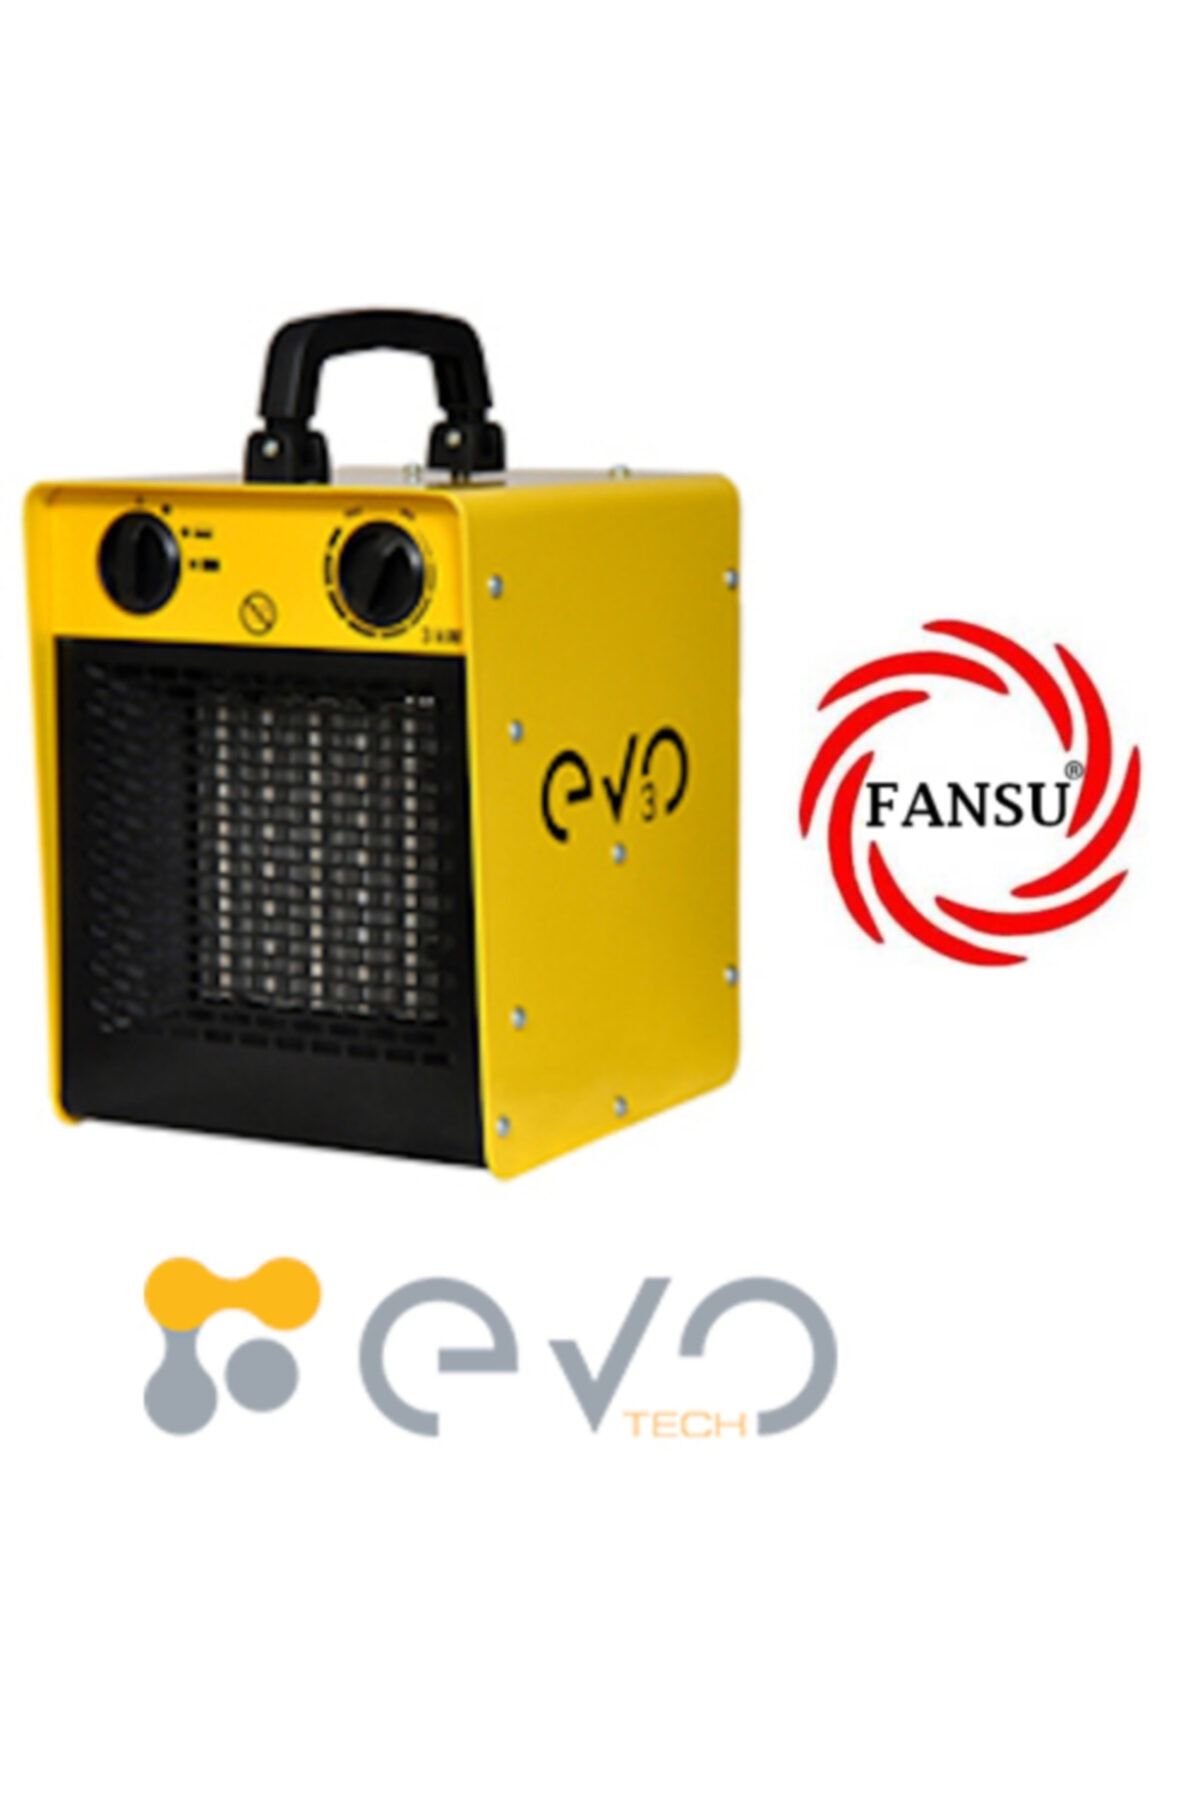 Evo Tech 3 Elektrikli Fanlı Ortam Isıtıcısı